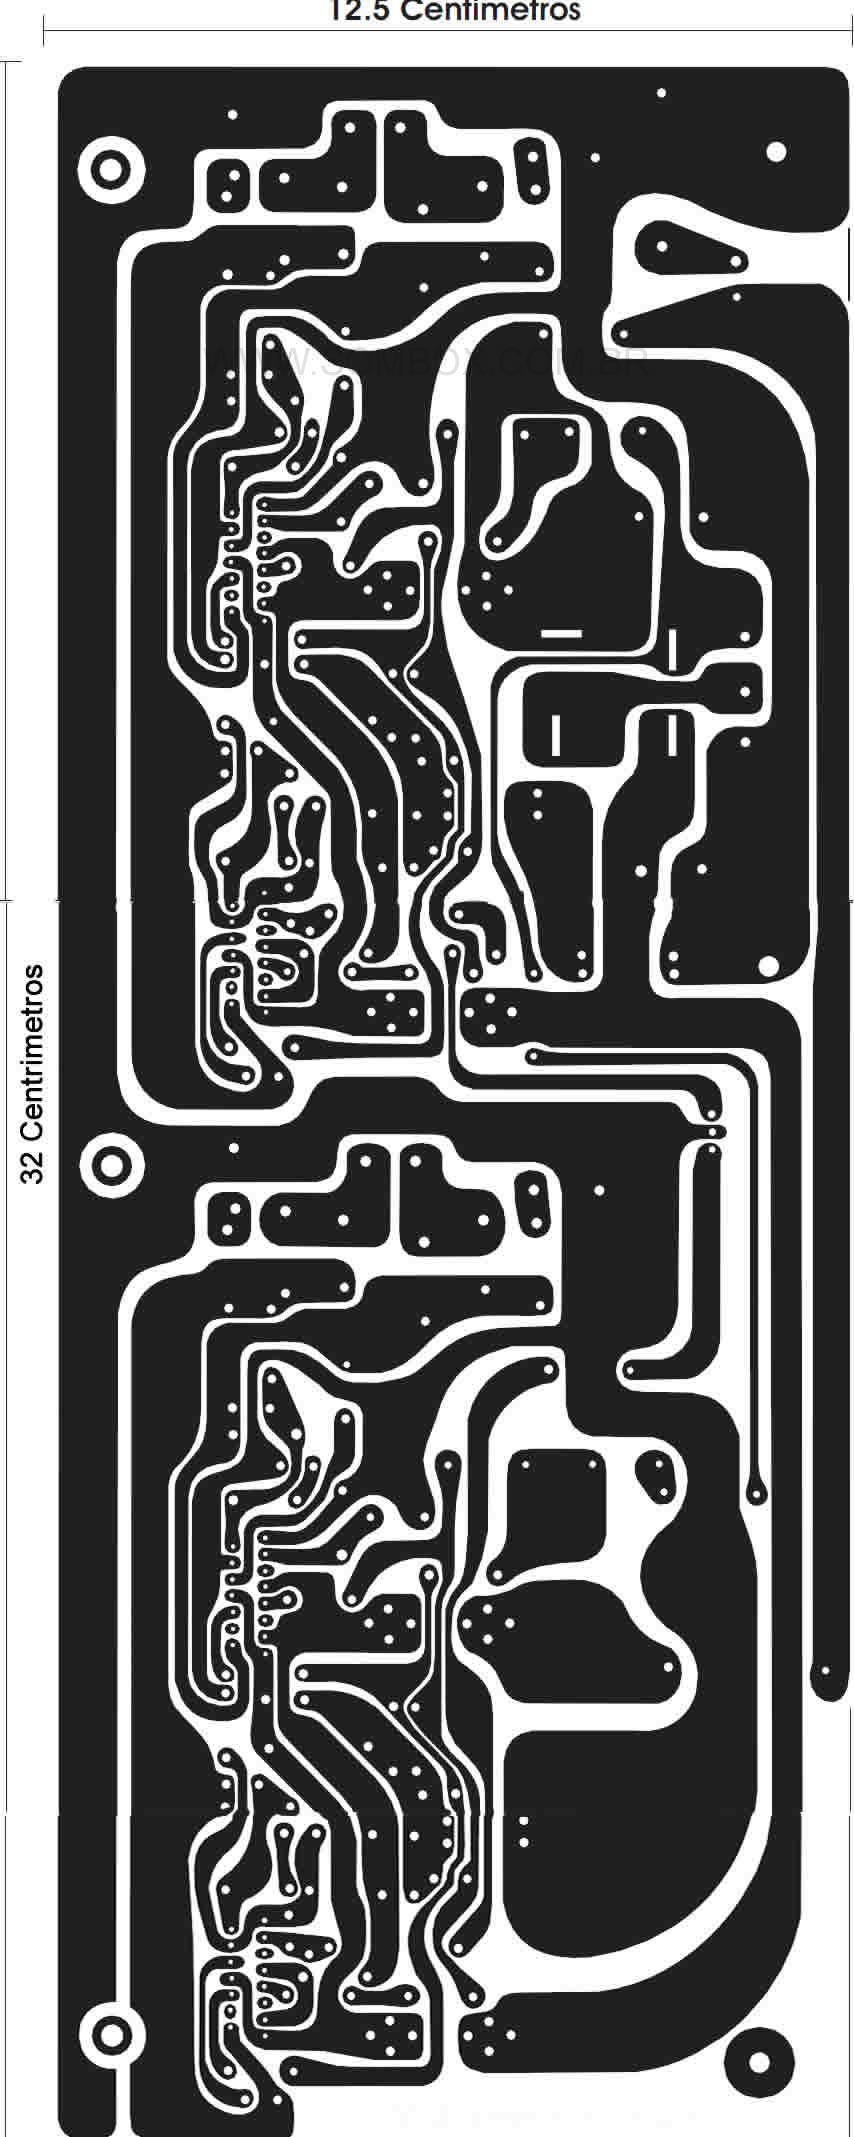 Layout da placa de circuito impresso.